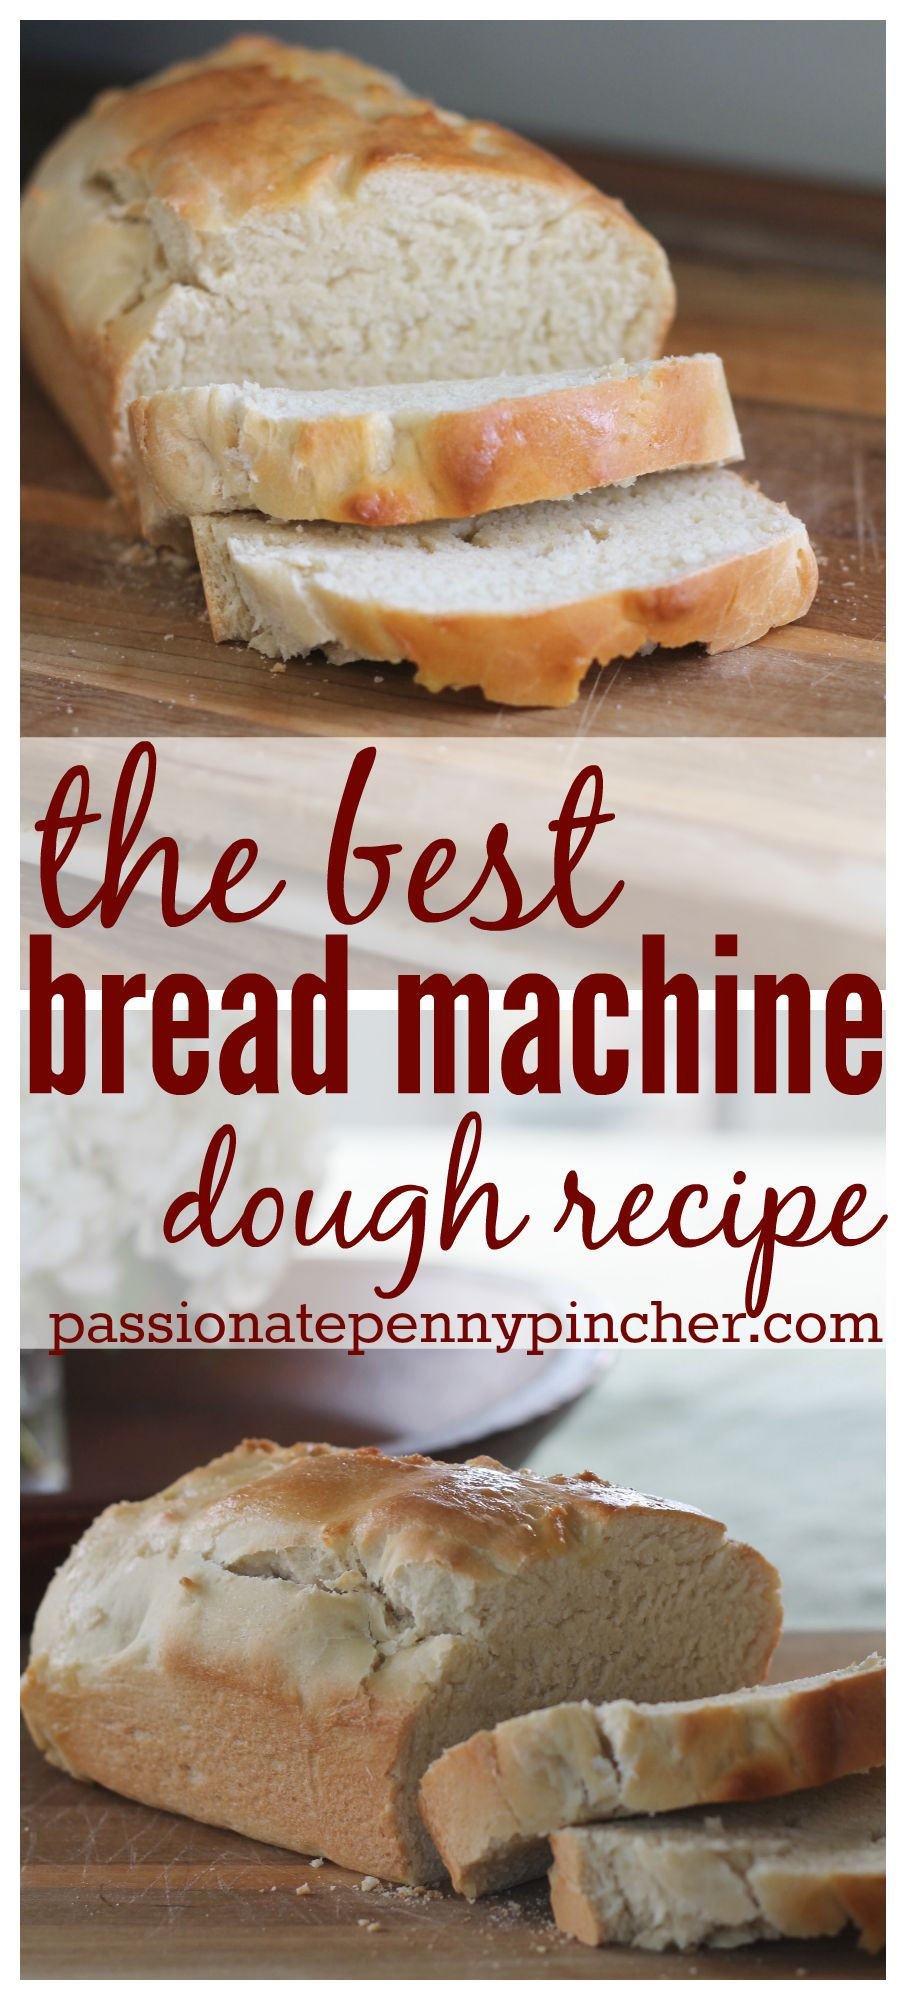 Best Bread Machine
 The Best Bread Machine Dough Recipe